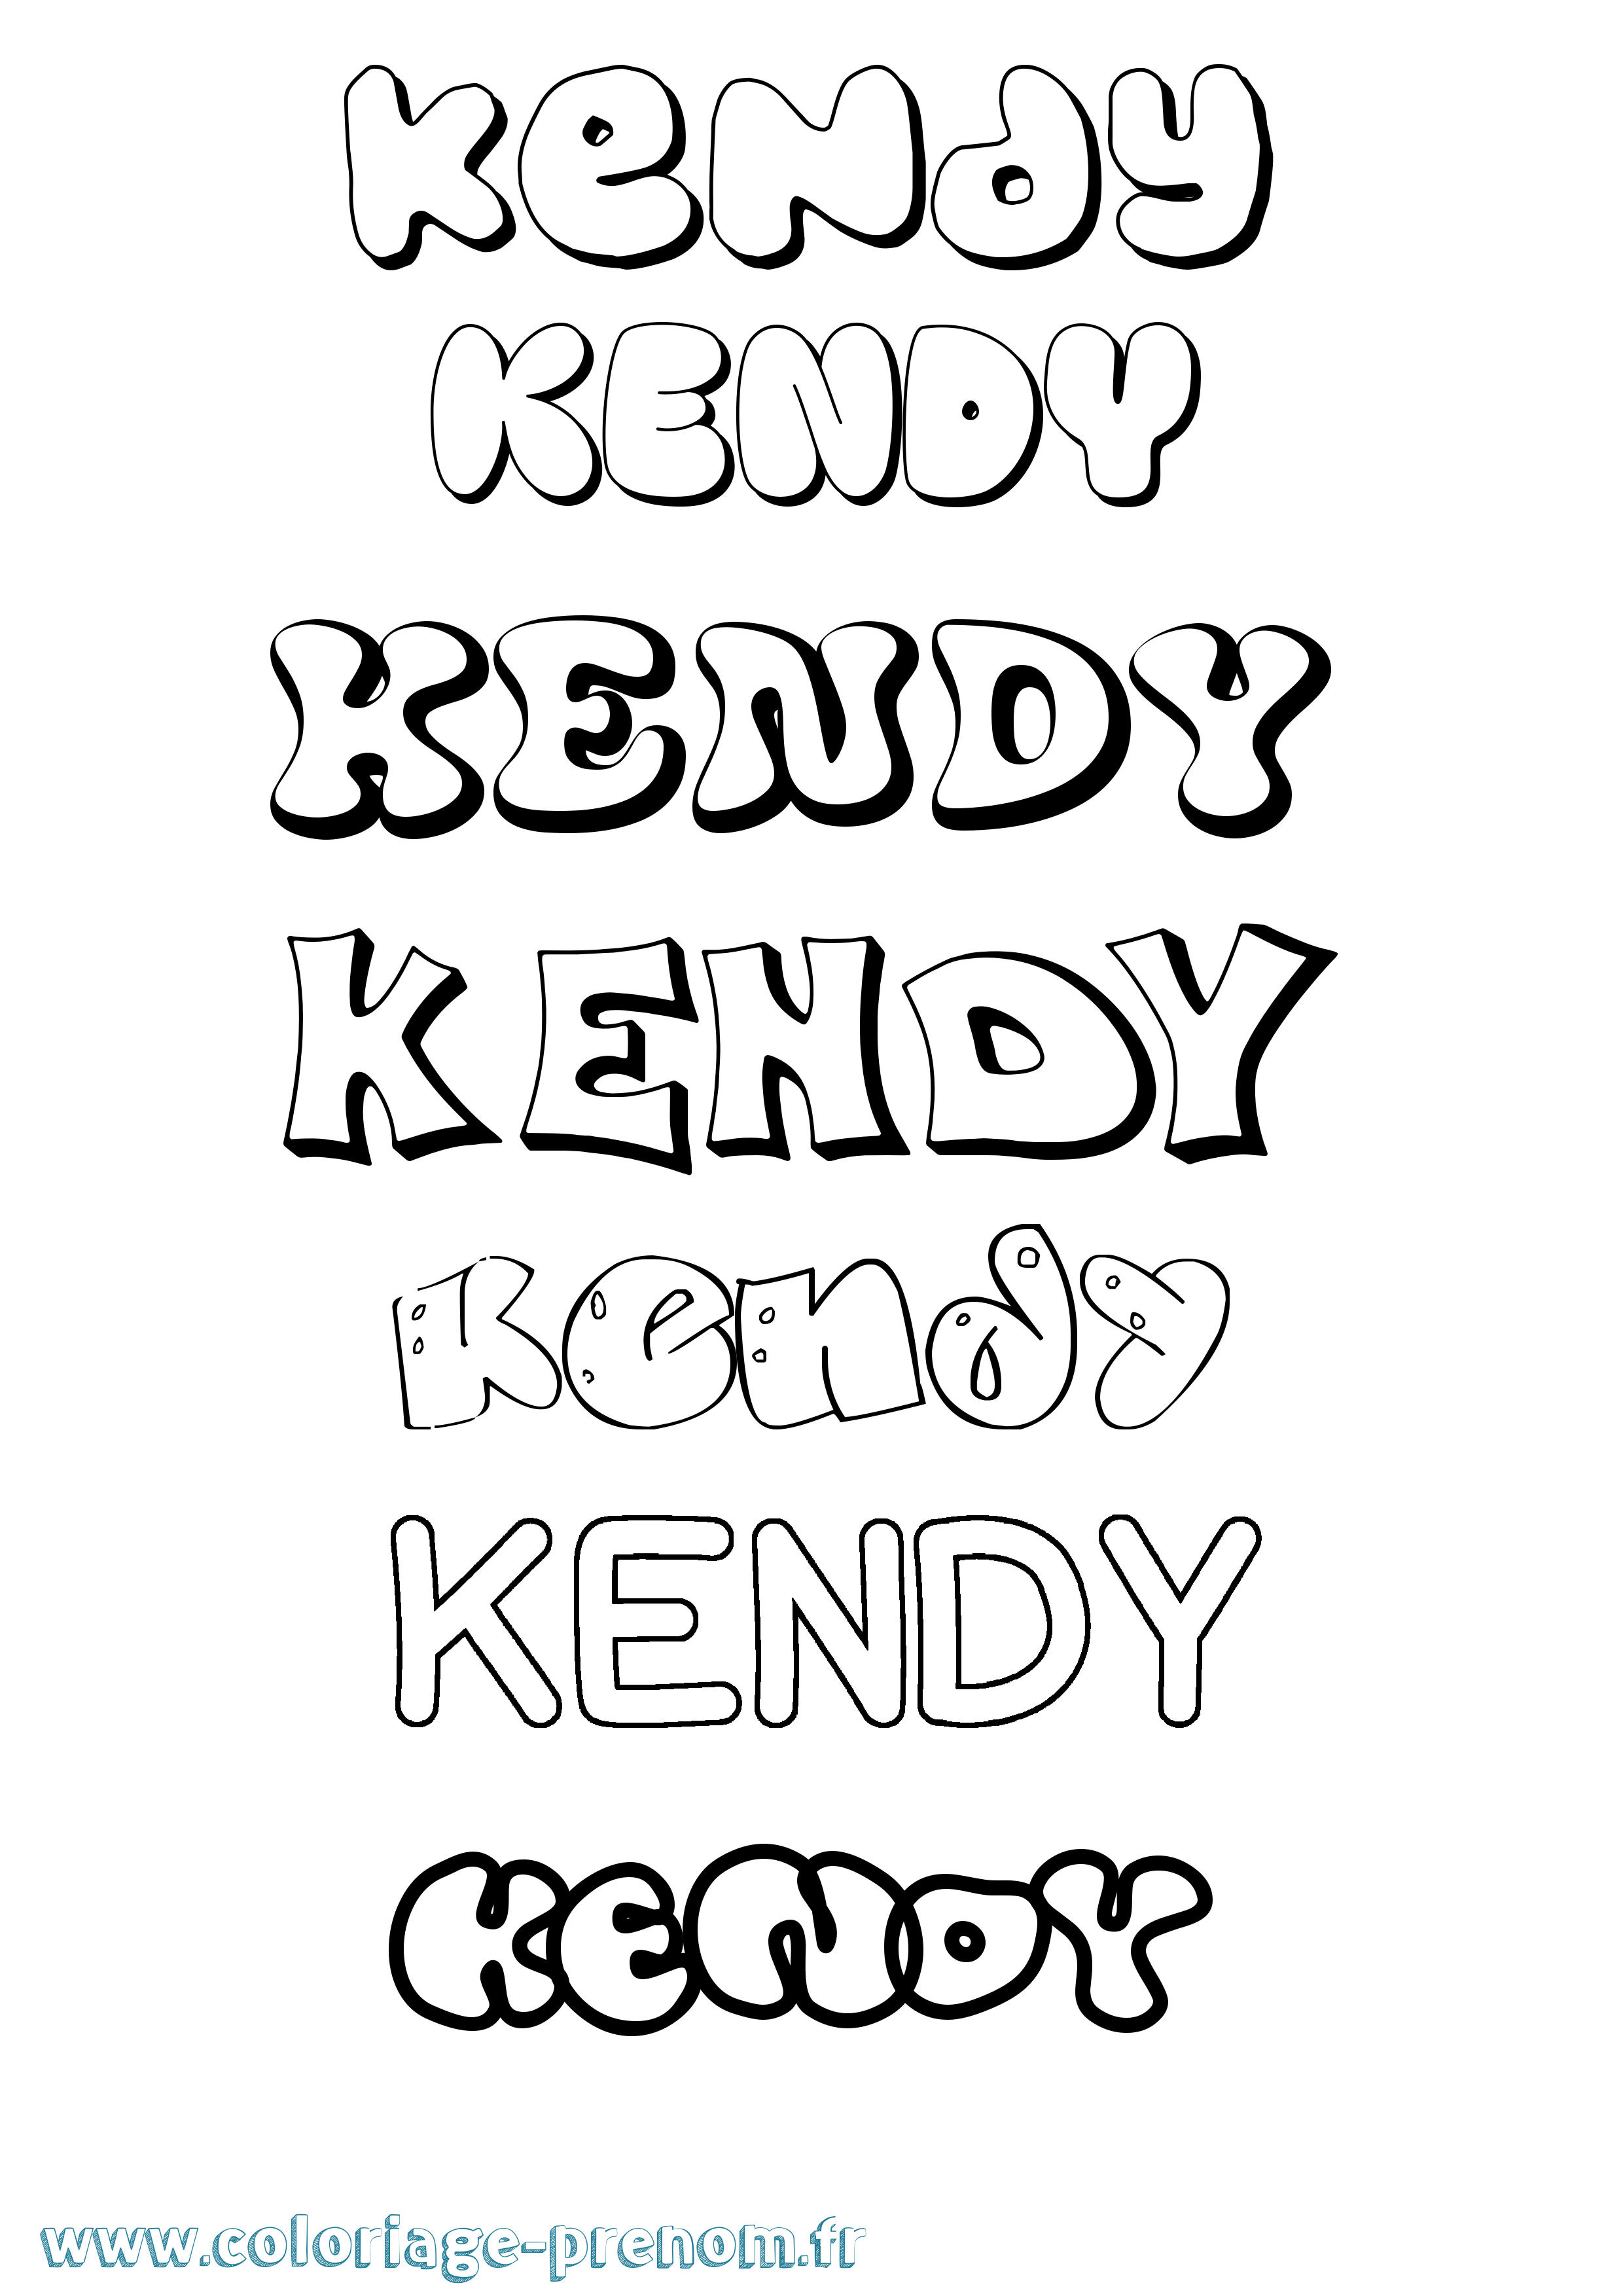 Coloriage prénom Kendy Bubble